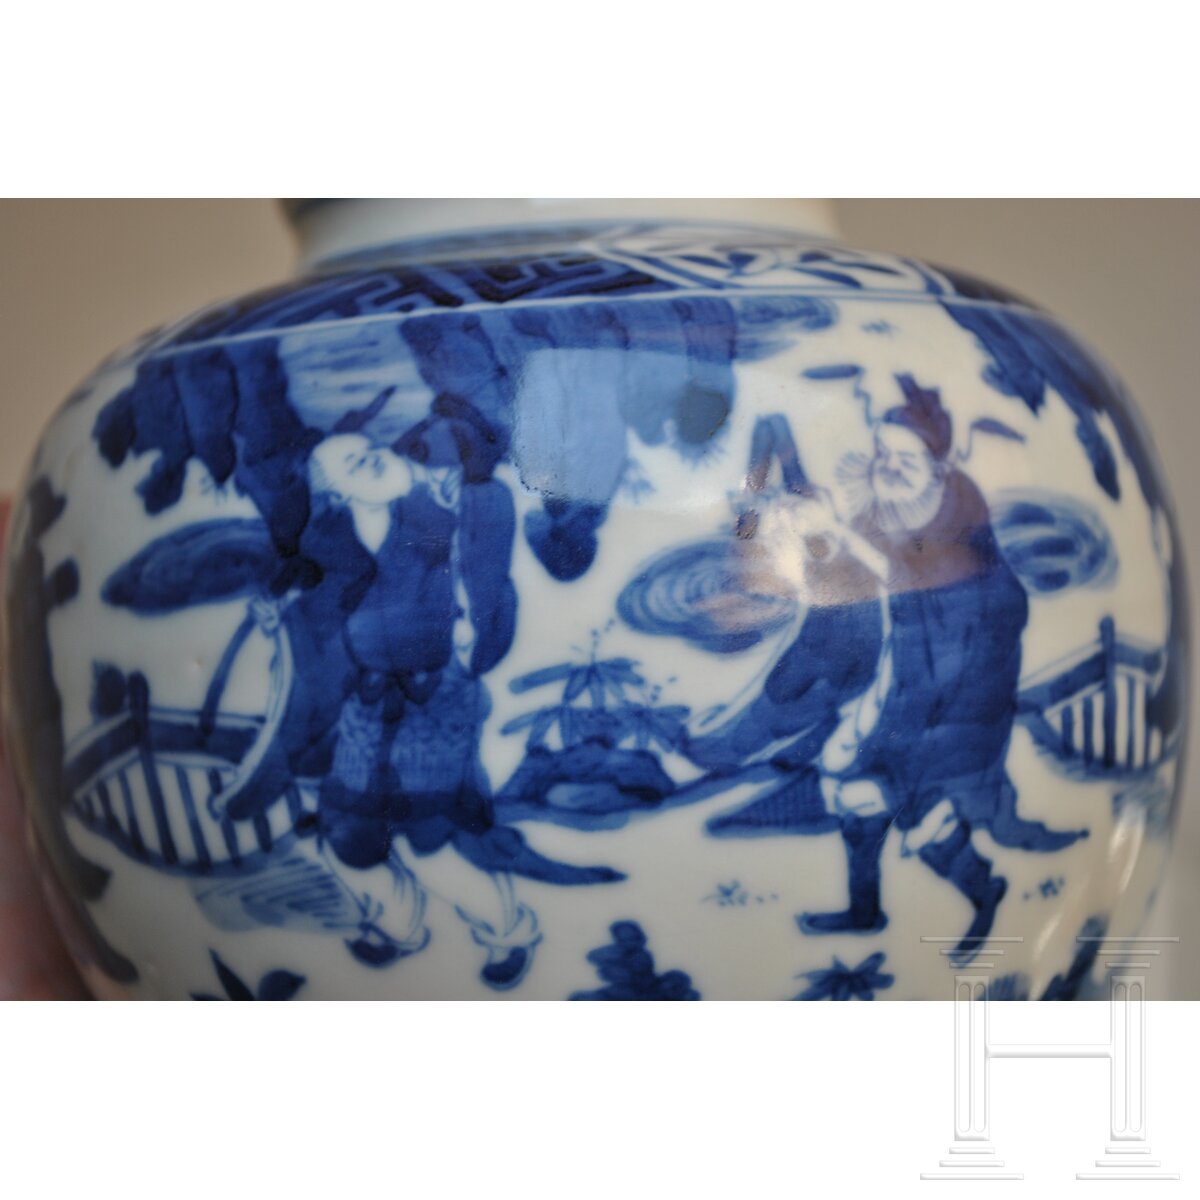 Blau-weiße Vase mit figürlicher Szene mit Wanli-Sechszeichenmarke, China, wahrscheinlich aus dieser - Image 11 of 18